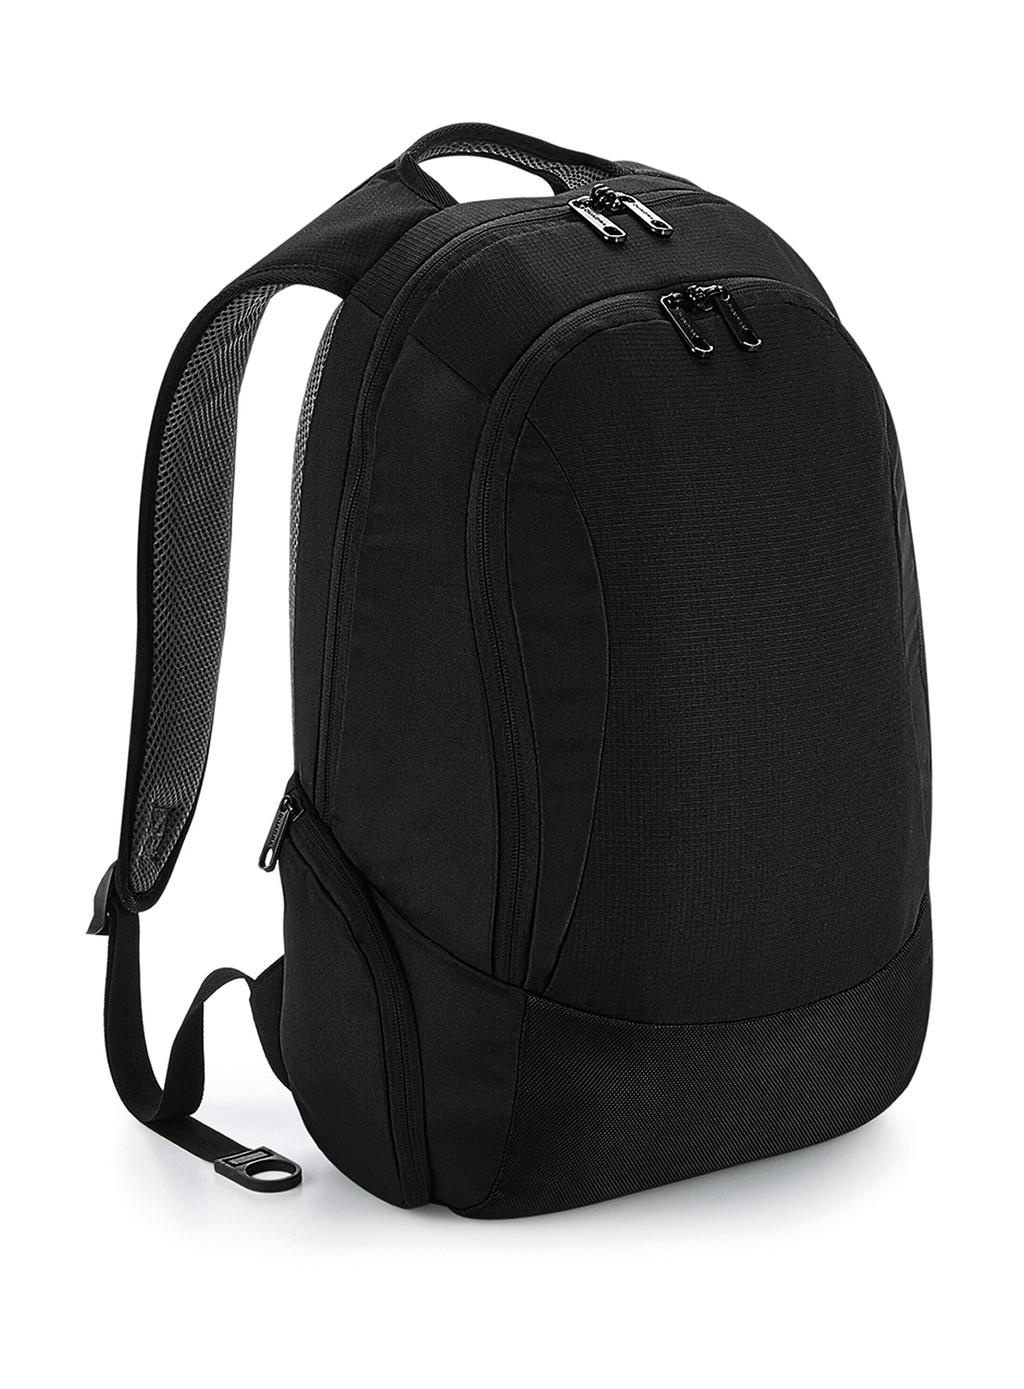 Vessel™ Slimline Laptop Backpack